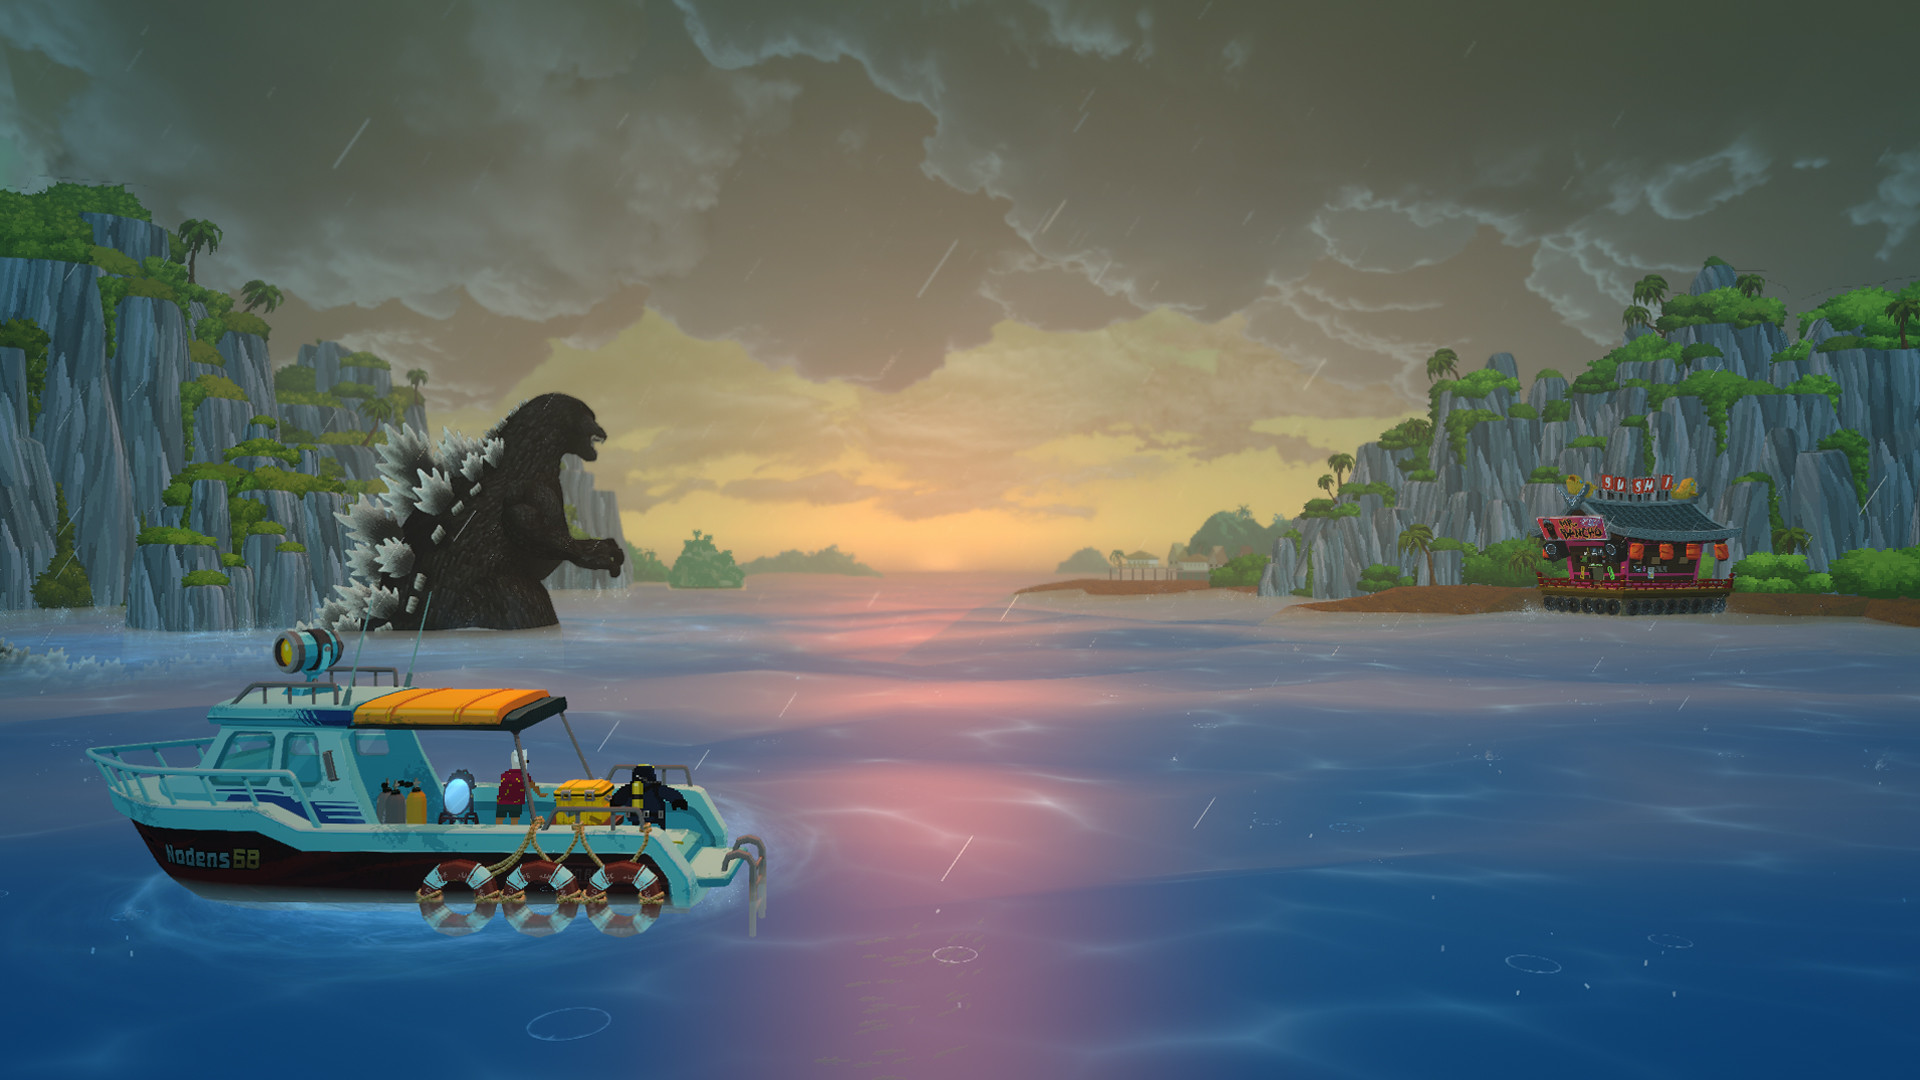 En el fondo, Godzilla avanza por la bahía hacia un restaurante de sushi amarrado a lo lejos. En primer plano, Dave y Cobra están en un basrco de pesca mirando cómo se desarrolla la escena.